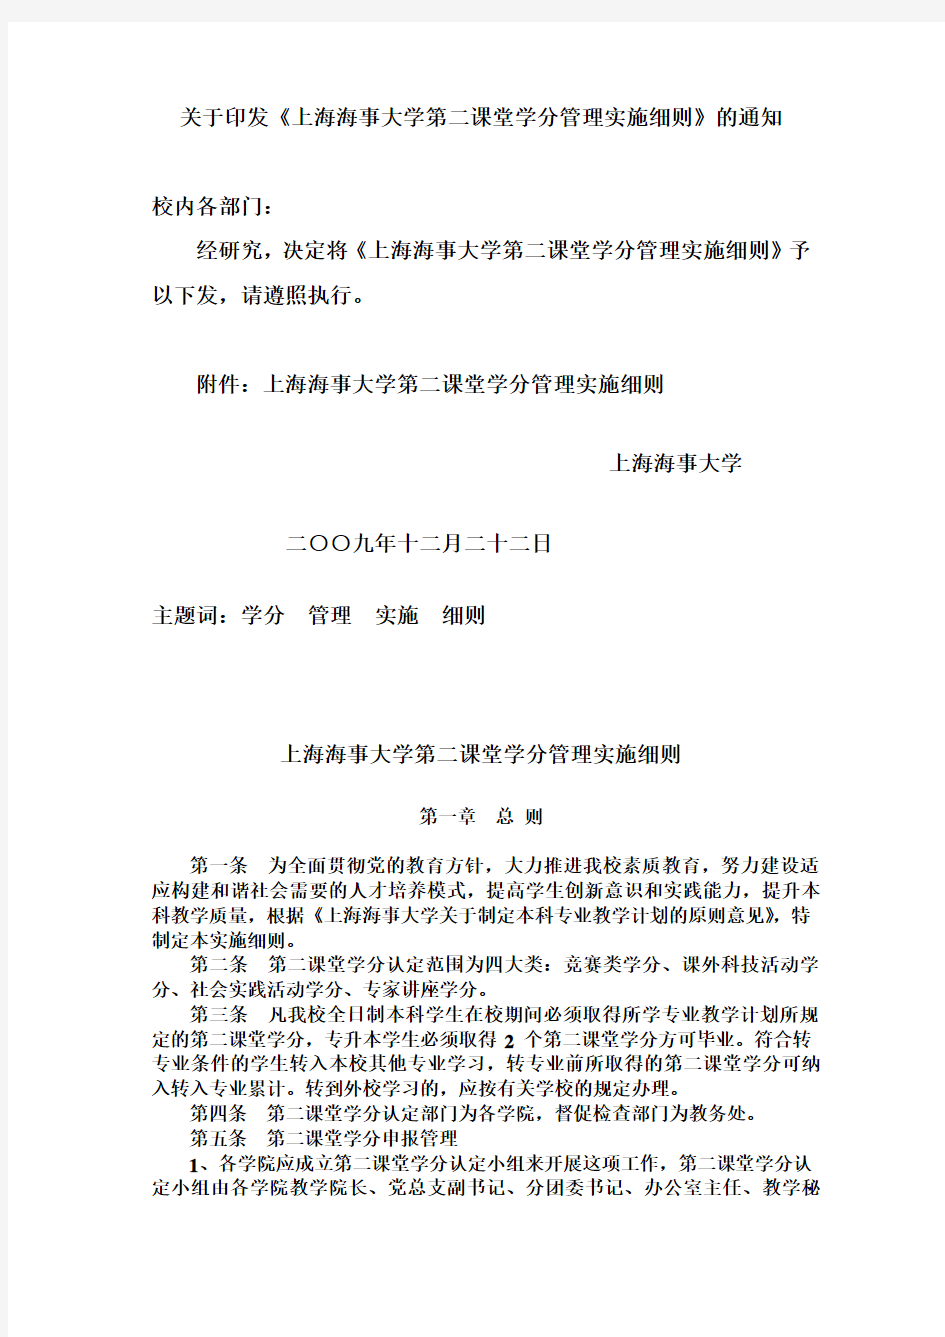 上海海事大学第二课堂学分管理实施细则(修改版)